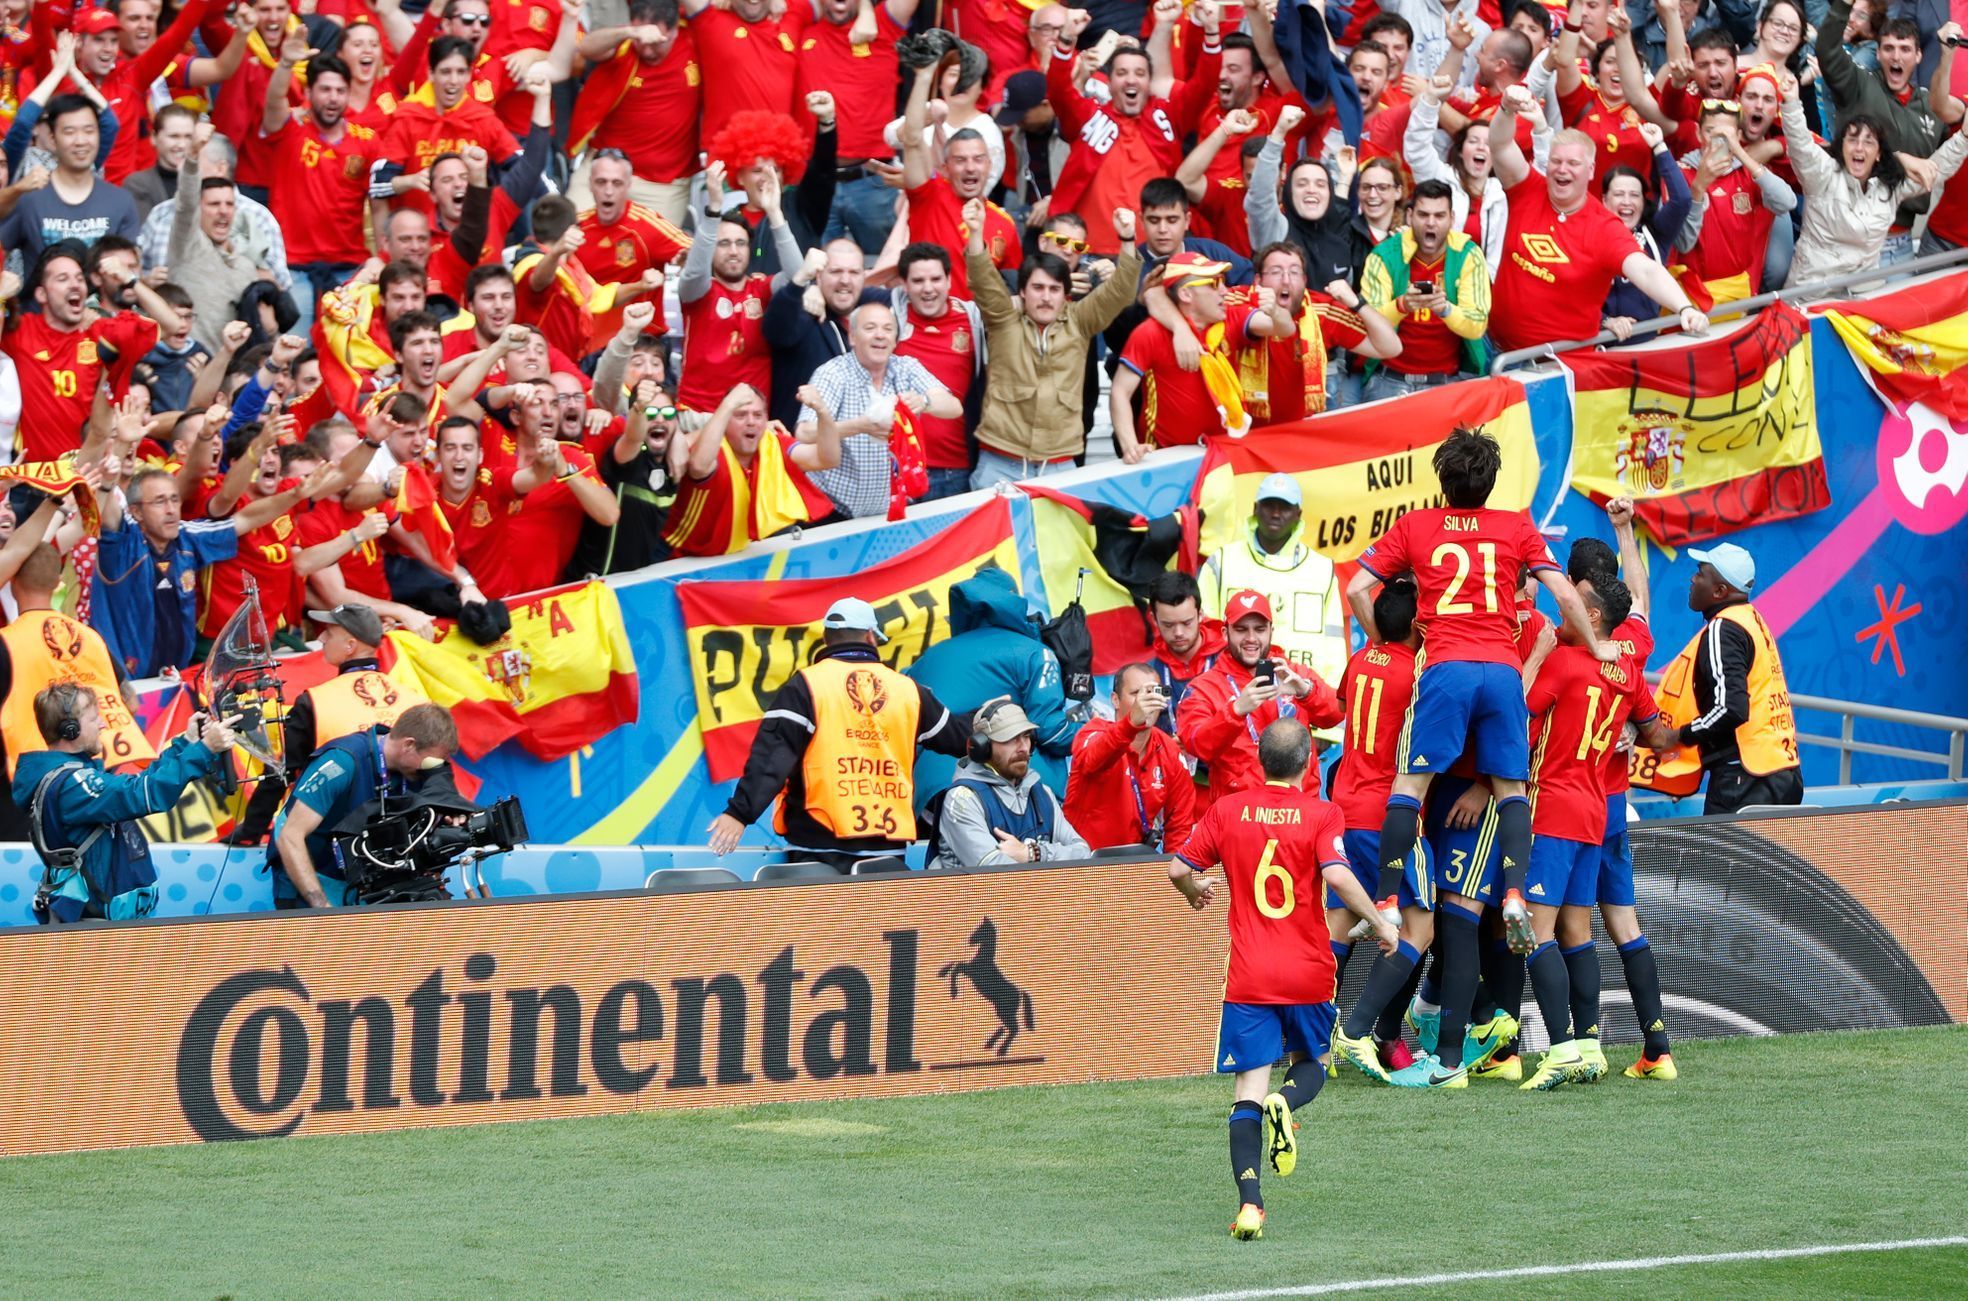 Euro 2016, Česko-Španělsko: Španělé slaví gól na 0:1